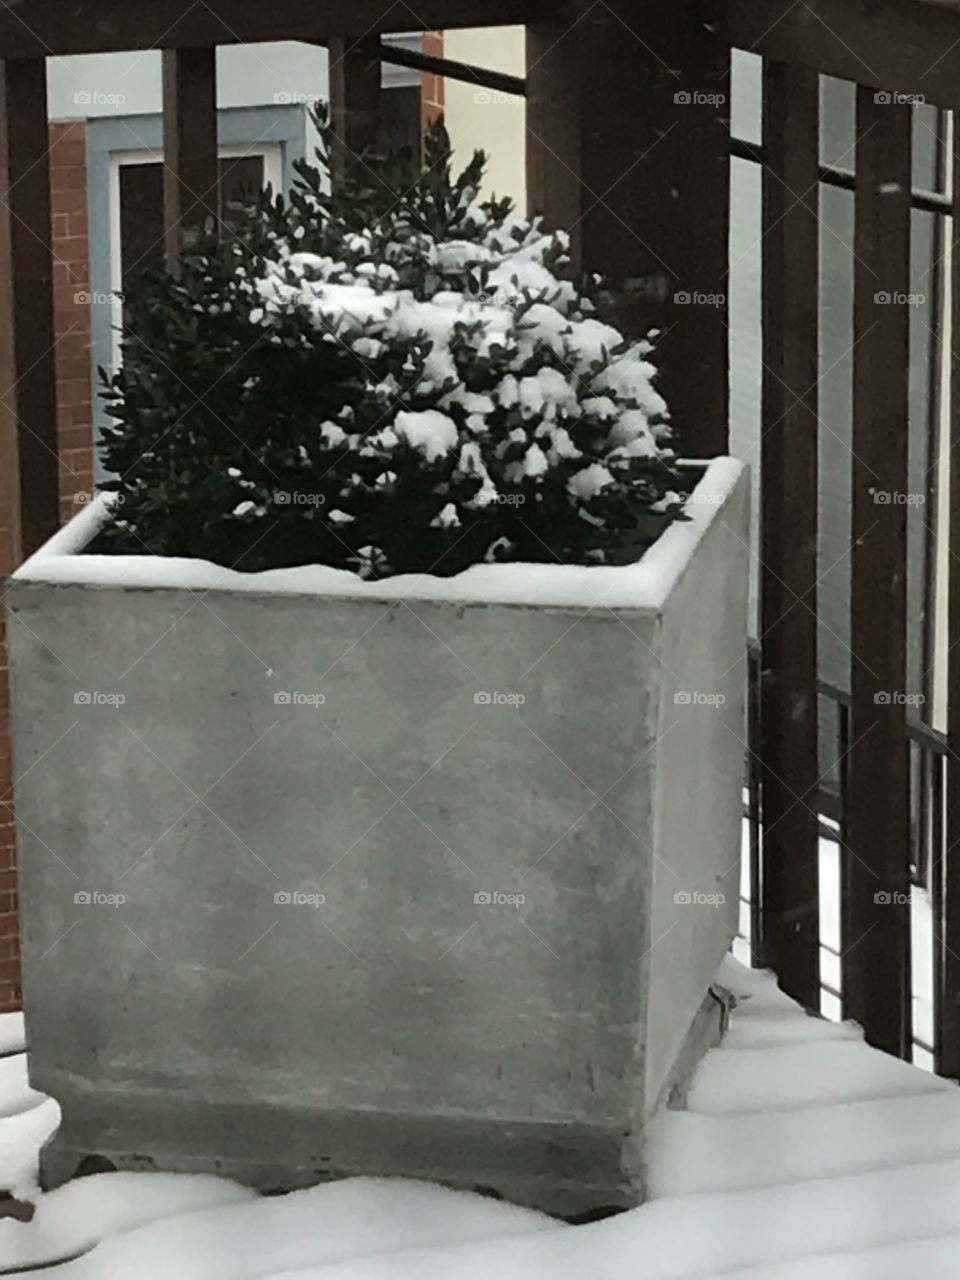 A snowy plant